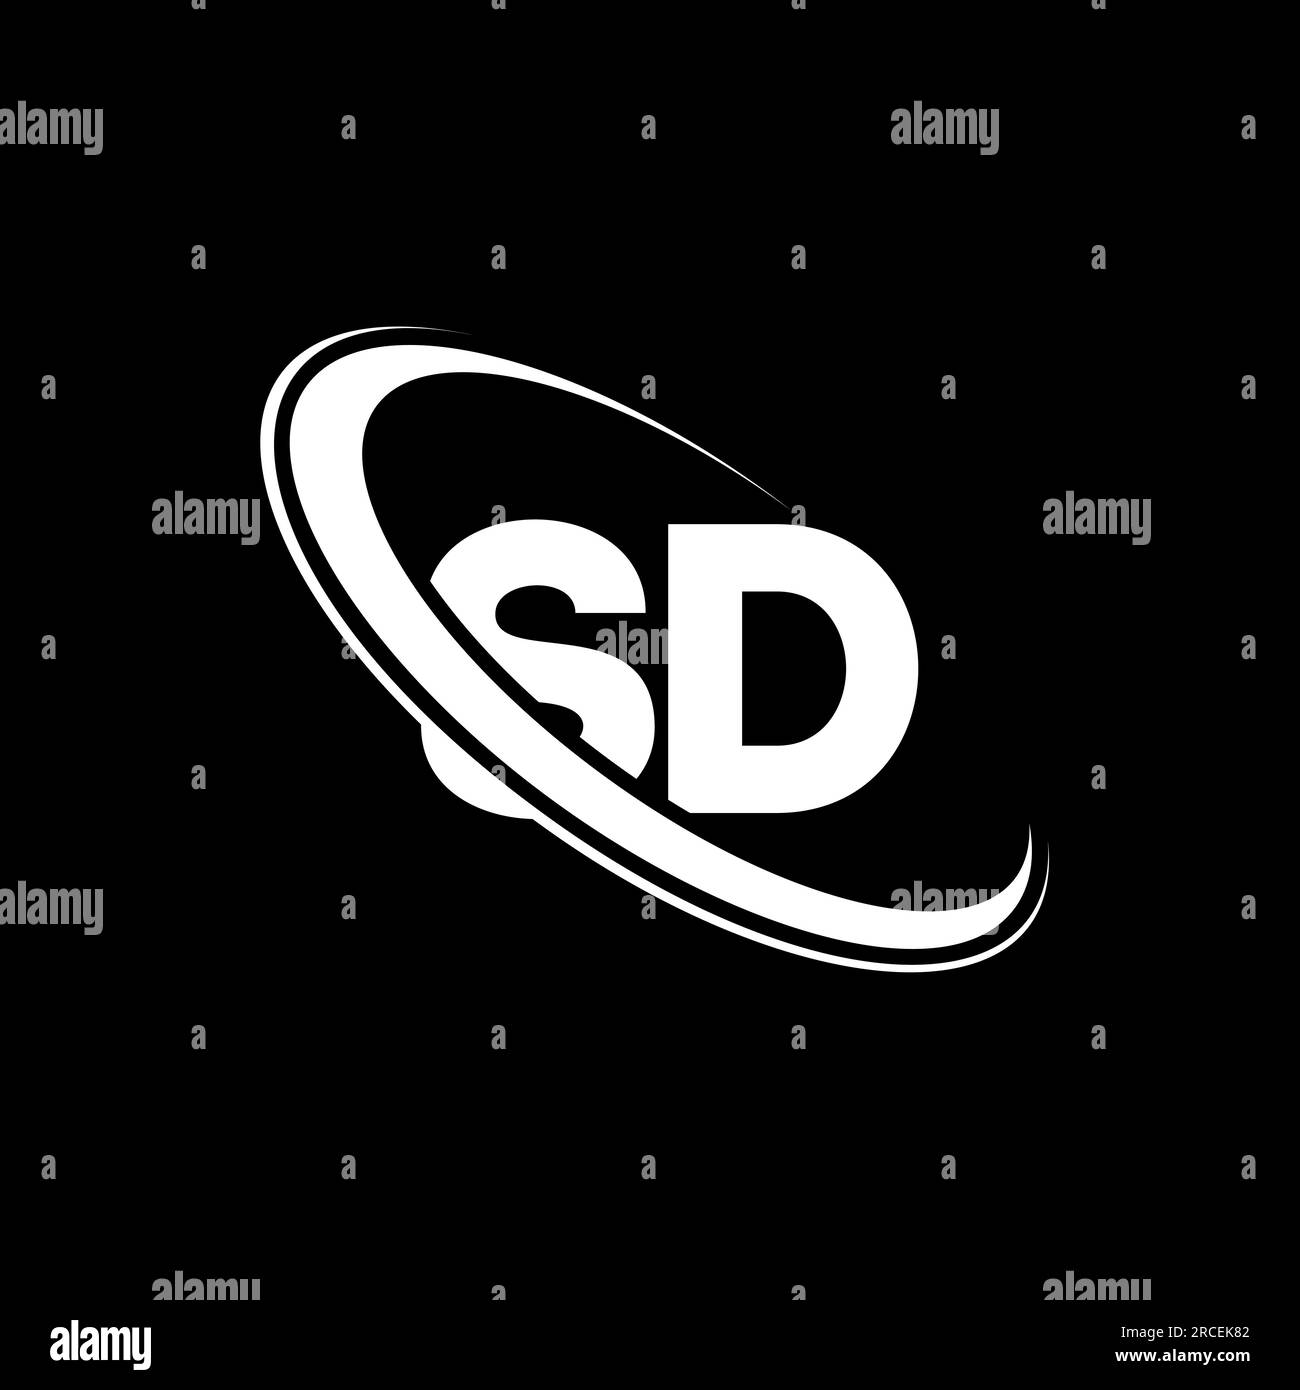 SD logo. S D design. White SD letter. SD/S D letter logo design. Initial letter SD linked circle uppercase monogram logo. Stock Vector